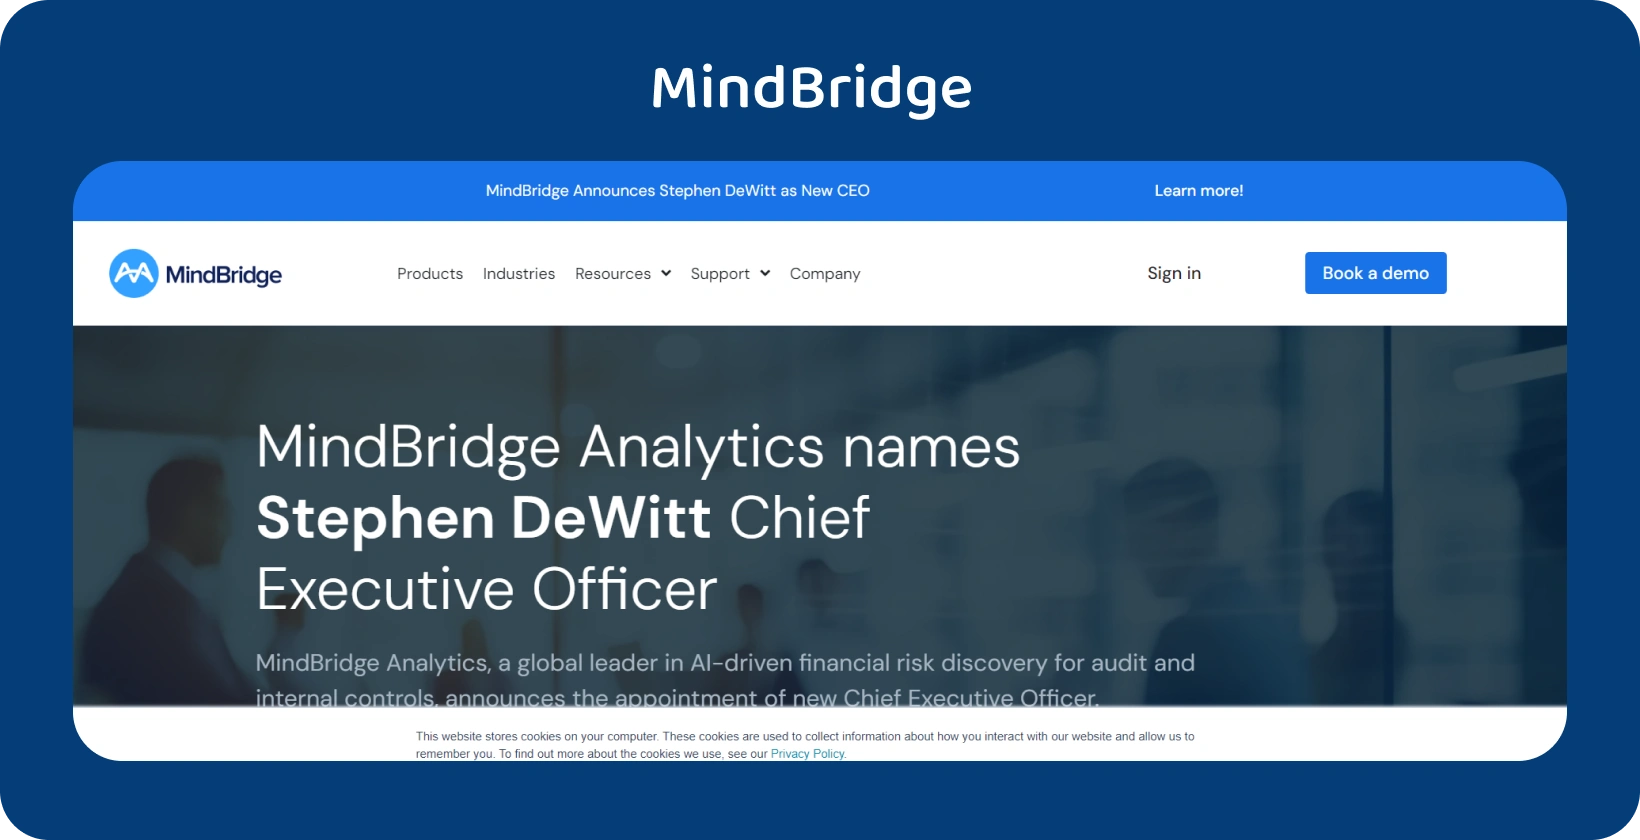 Pagina principală MindBridge Analytics îl anunță cu mândrie pe Stephen DeWitt ca noul său CEO, conducând călătoria viitoare a companiei.